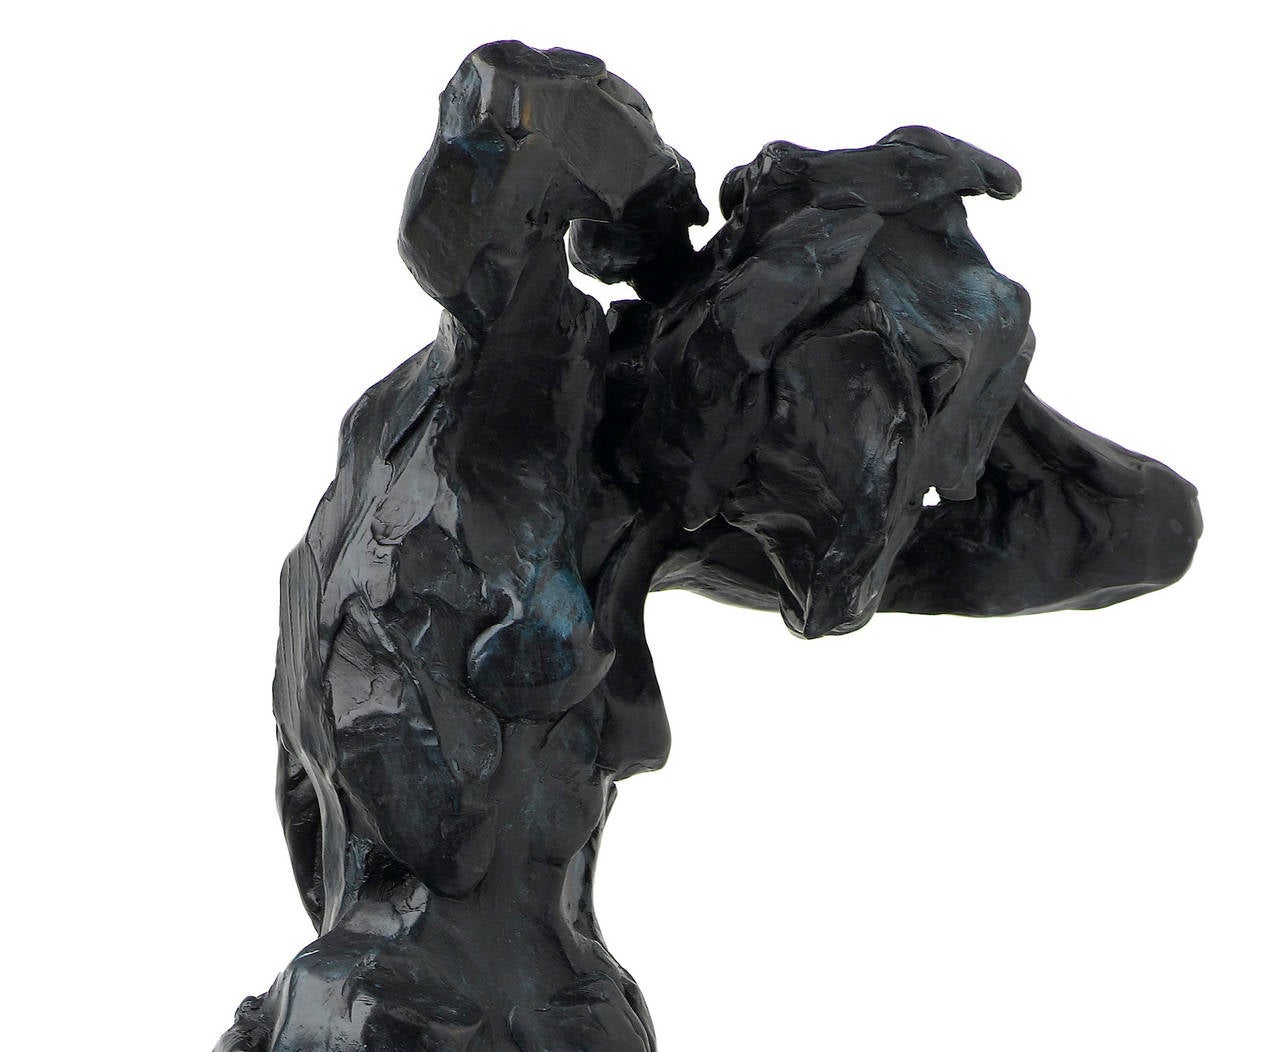 Ohne Titel XXVII 4/8 - Emotiv, nackt, weiblich, figurativ, Patina, Bronzestatuette (Gold), Nude Sculpture, von Richard Tosczak